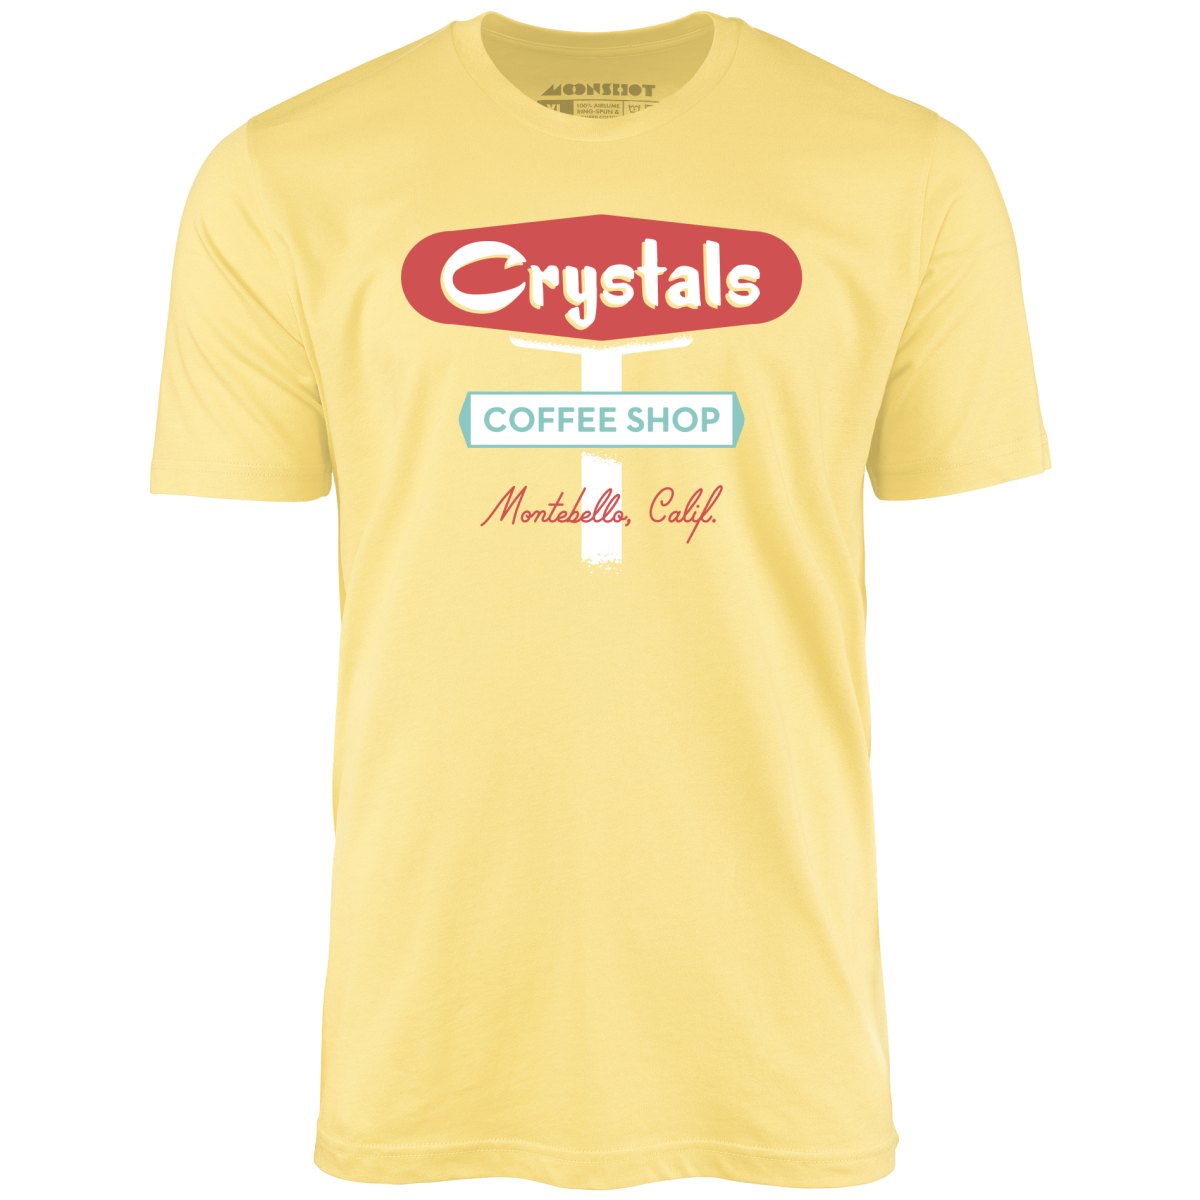 Crystals Coffee Shop - Montebello, CA - Vintage Restaurant - Unisex T-Shirt